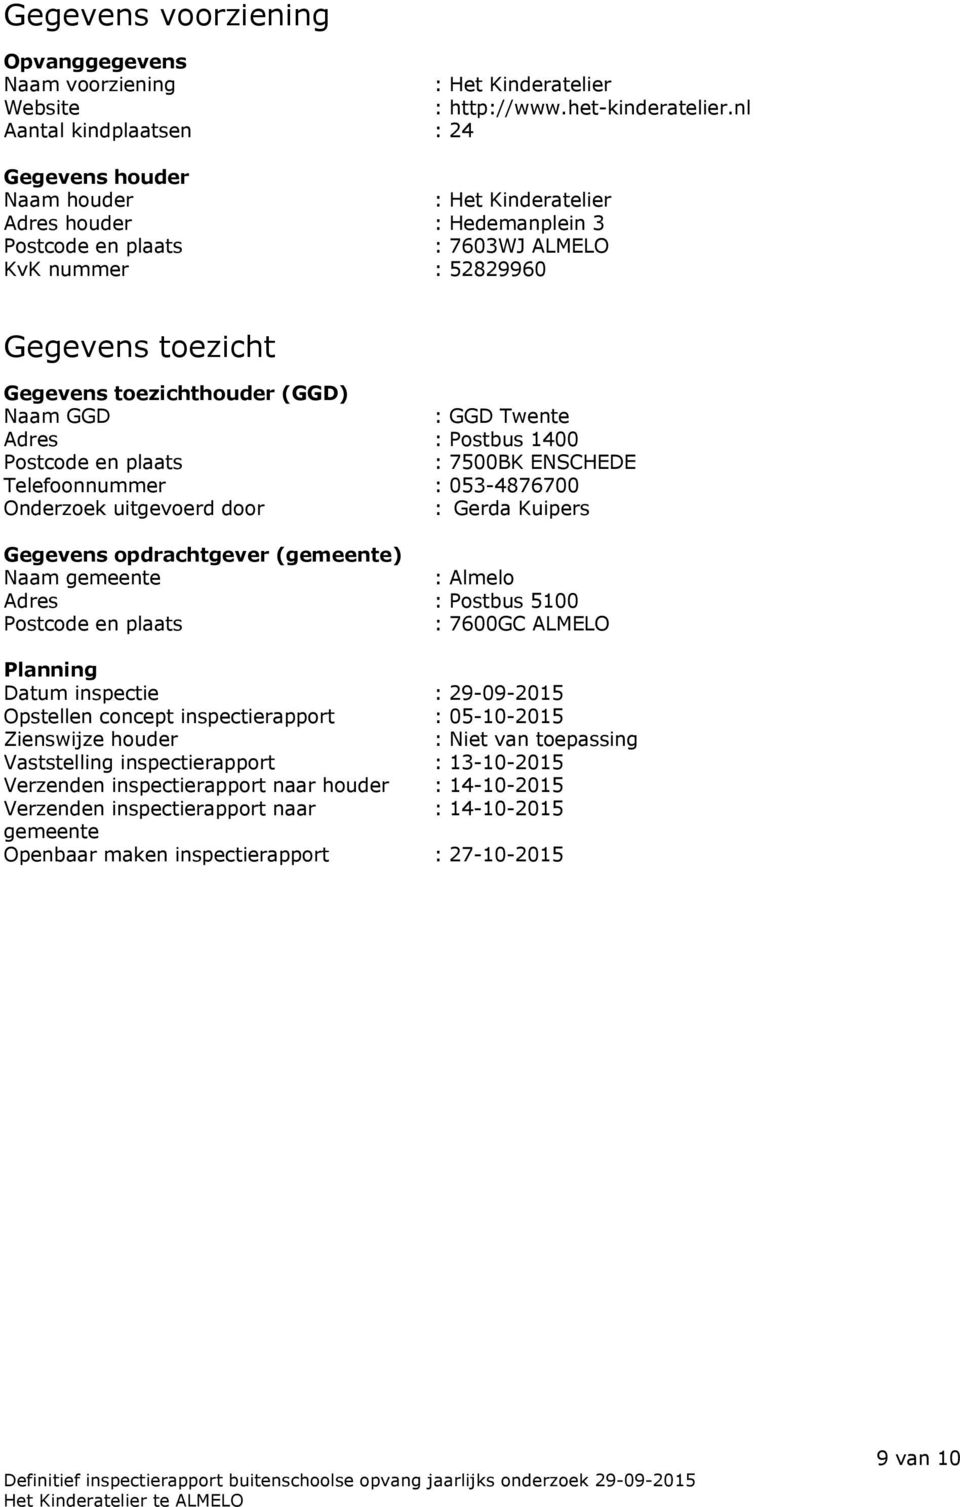 toezichthouder (GGD) Naam GGD : GGD Twente Adres : Postbus 1400 Postcode en plaats : 7500BK ENSCHEDE Telefoonnummer : 053-4876700 Onderzoek uitgevoerd door : Gerda Kuipers Gegevens opdrachtgever